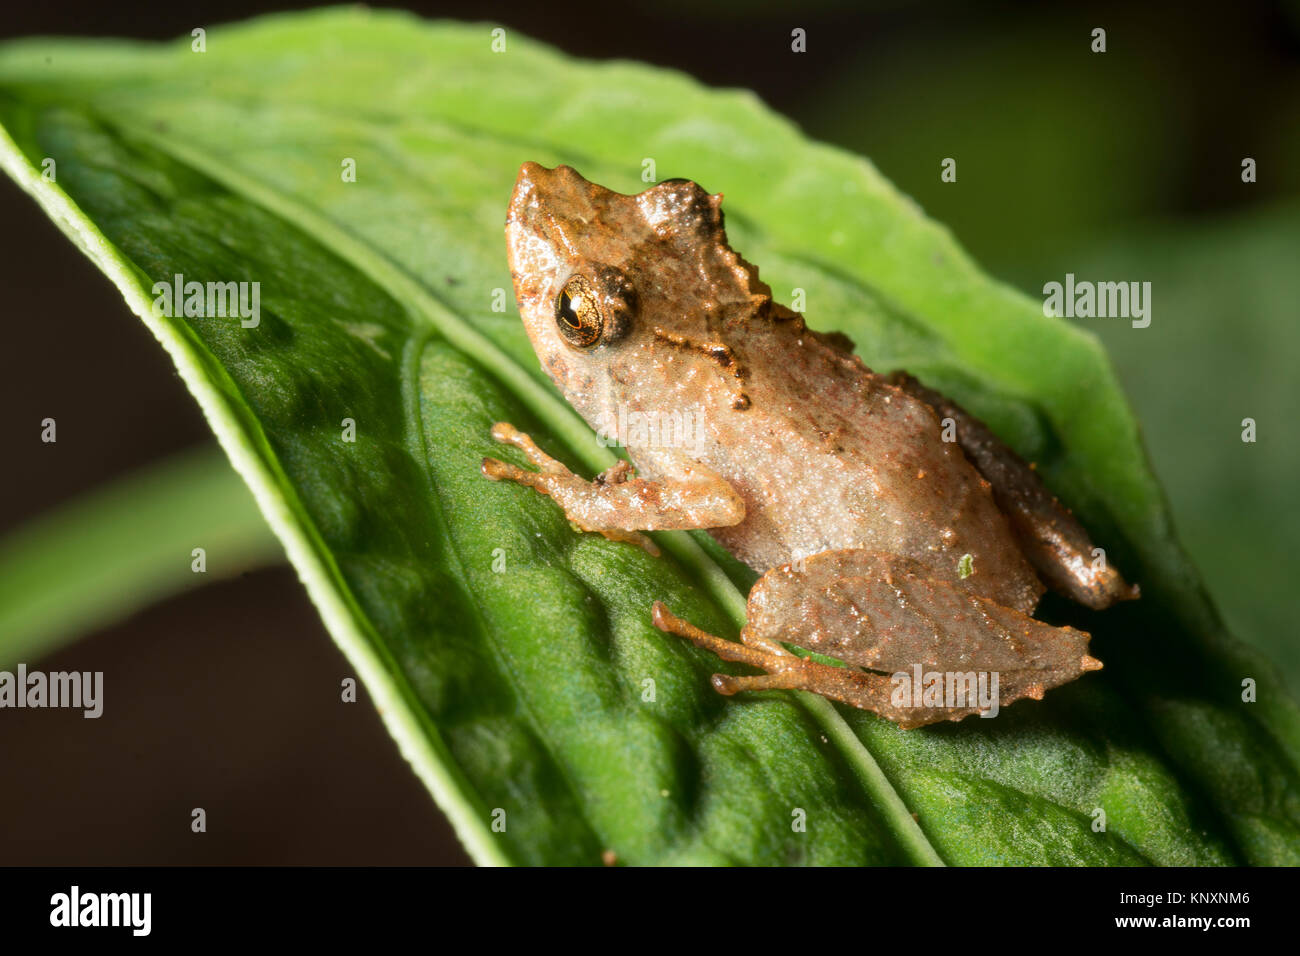 Rain Frog (Pristimantis sp.) on a leaf in the rainforest.  In the Cordillera del Condor, the Ecuadorian Amazon. Stock Photo